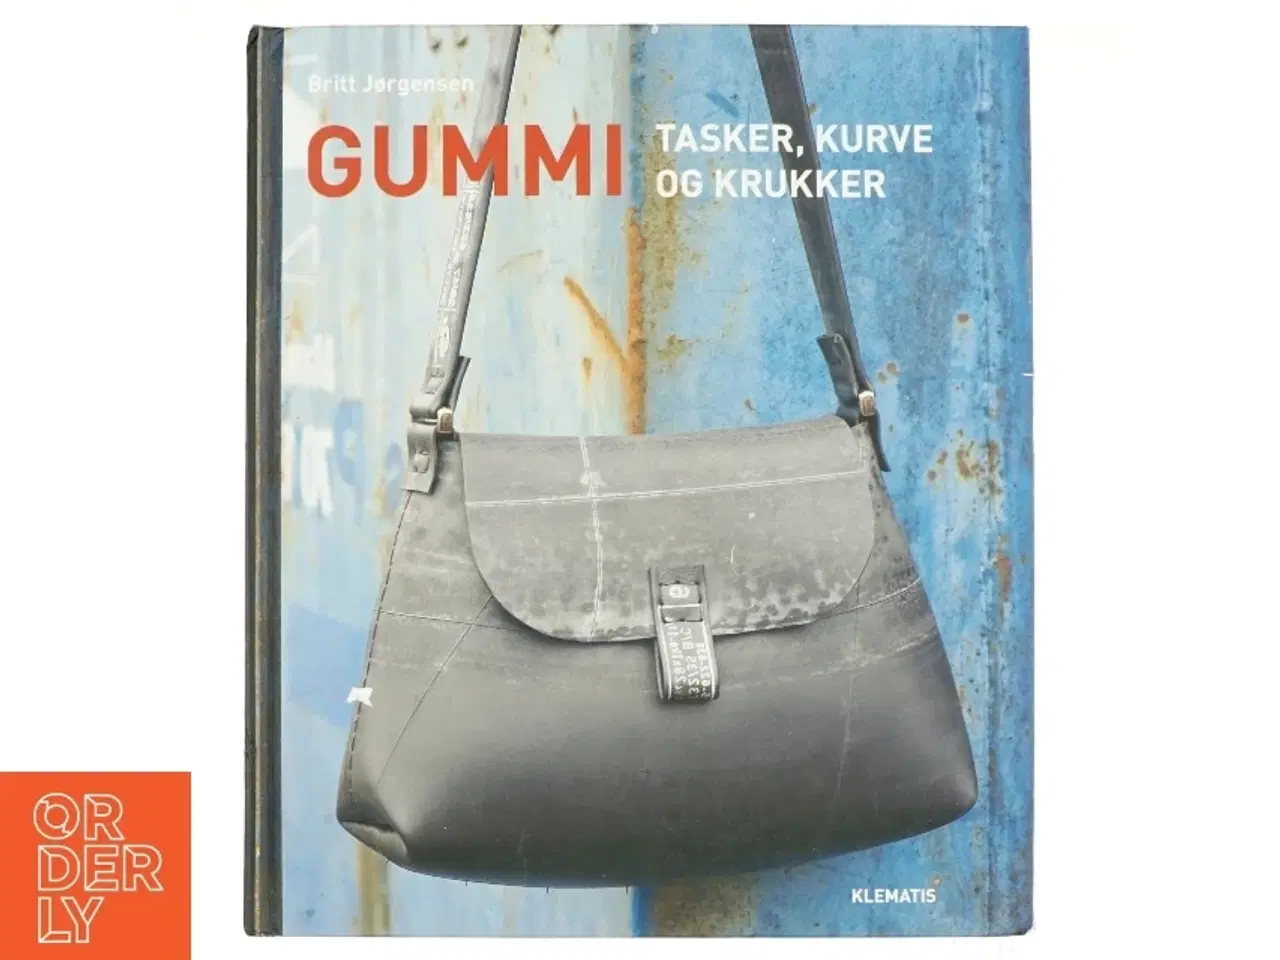 Billede 1 - Gummi : tasker, kurve og krukker af Britt Jørgensen (Bog)